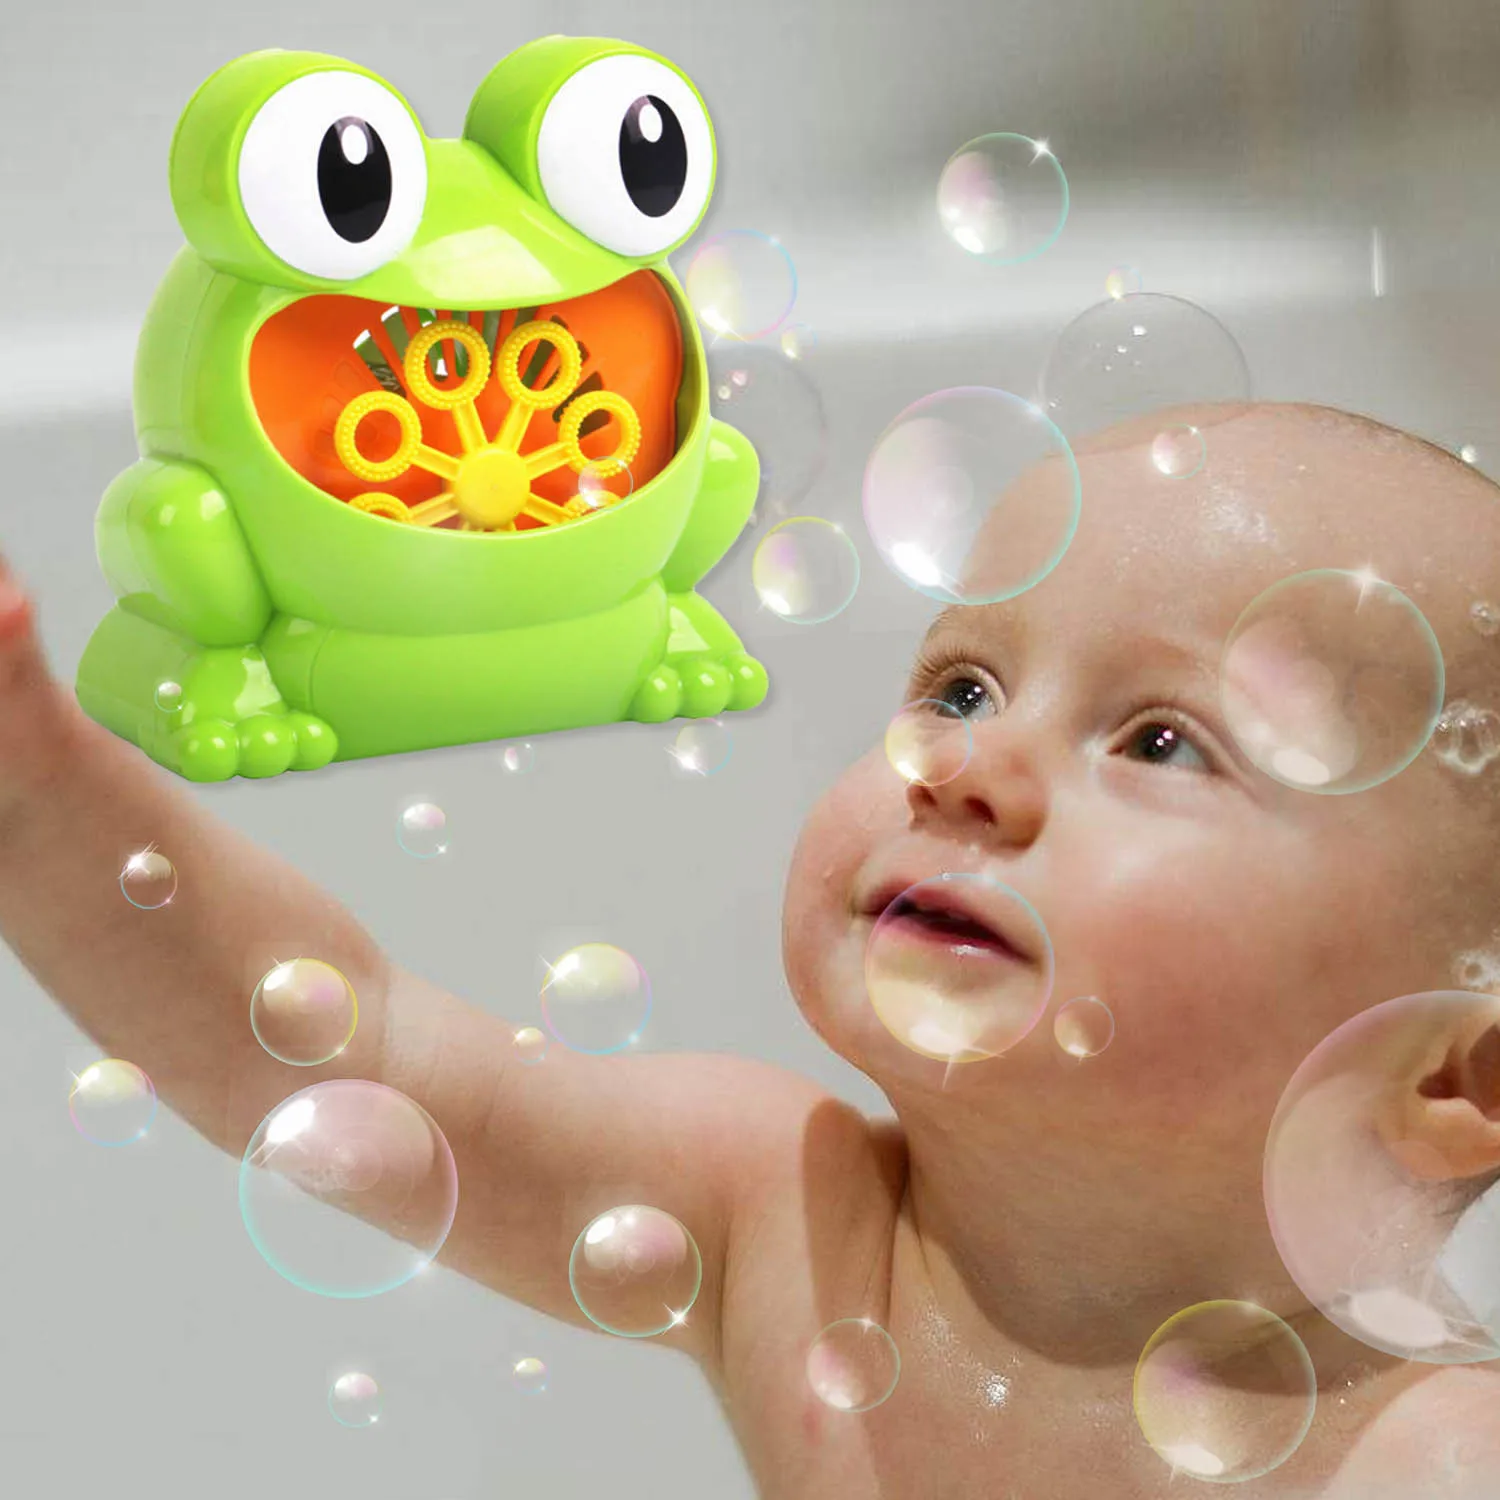 Besegad Милый Забавный форма лягушки музыка устройство для мыльных пузырей машина игрушка воздуходувка для детей детские души плавательный